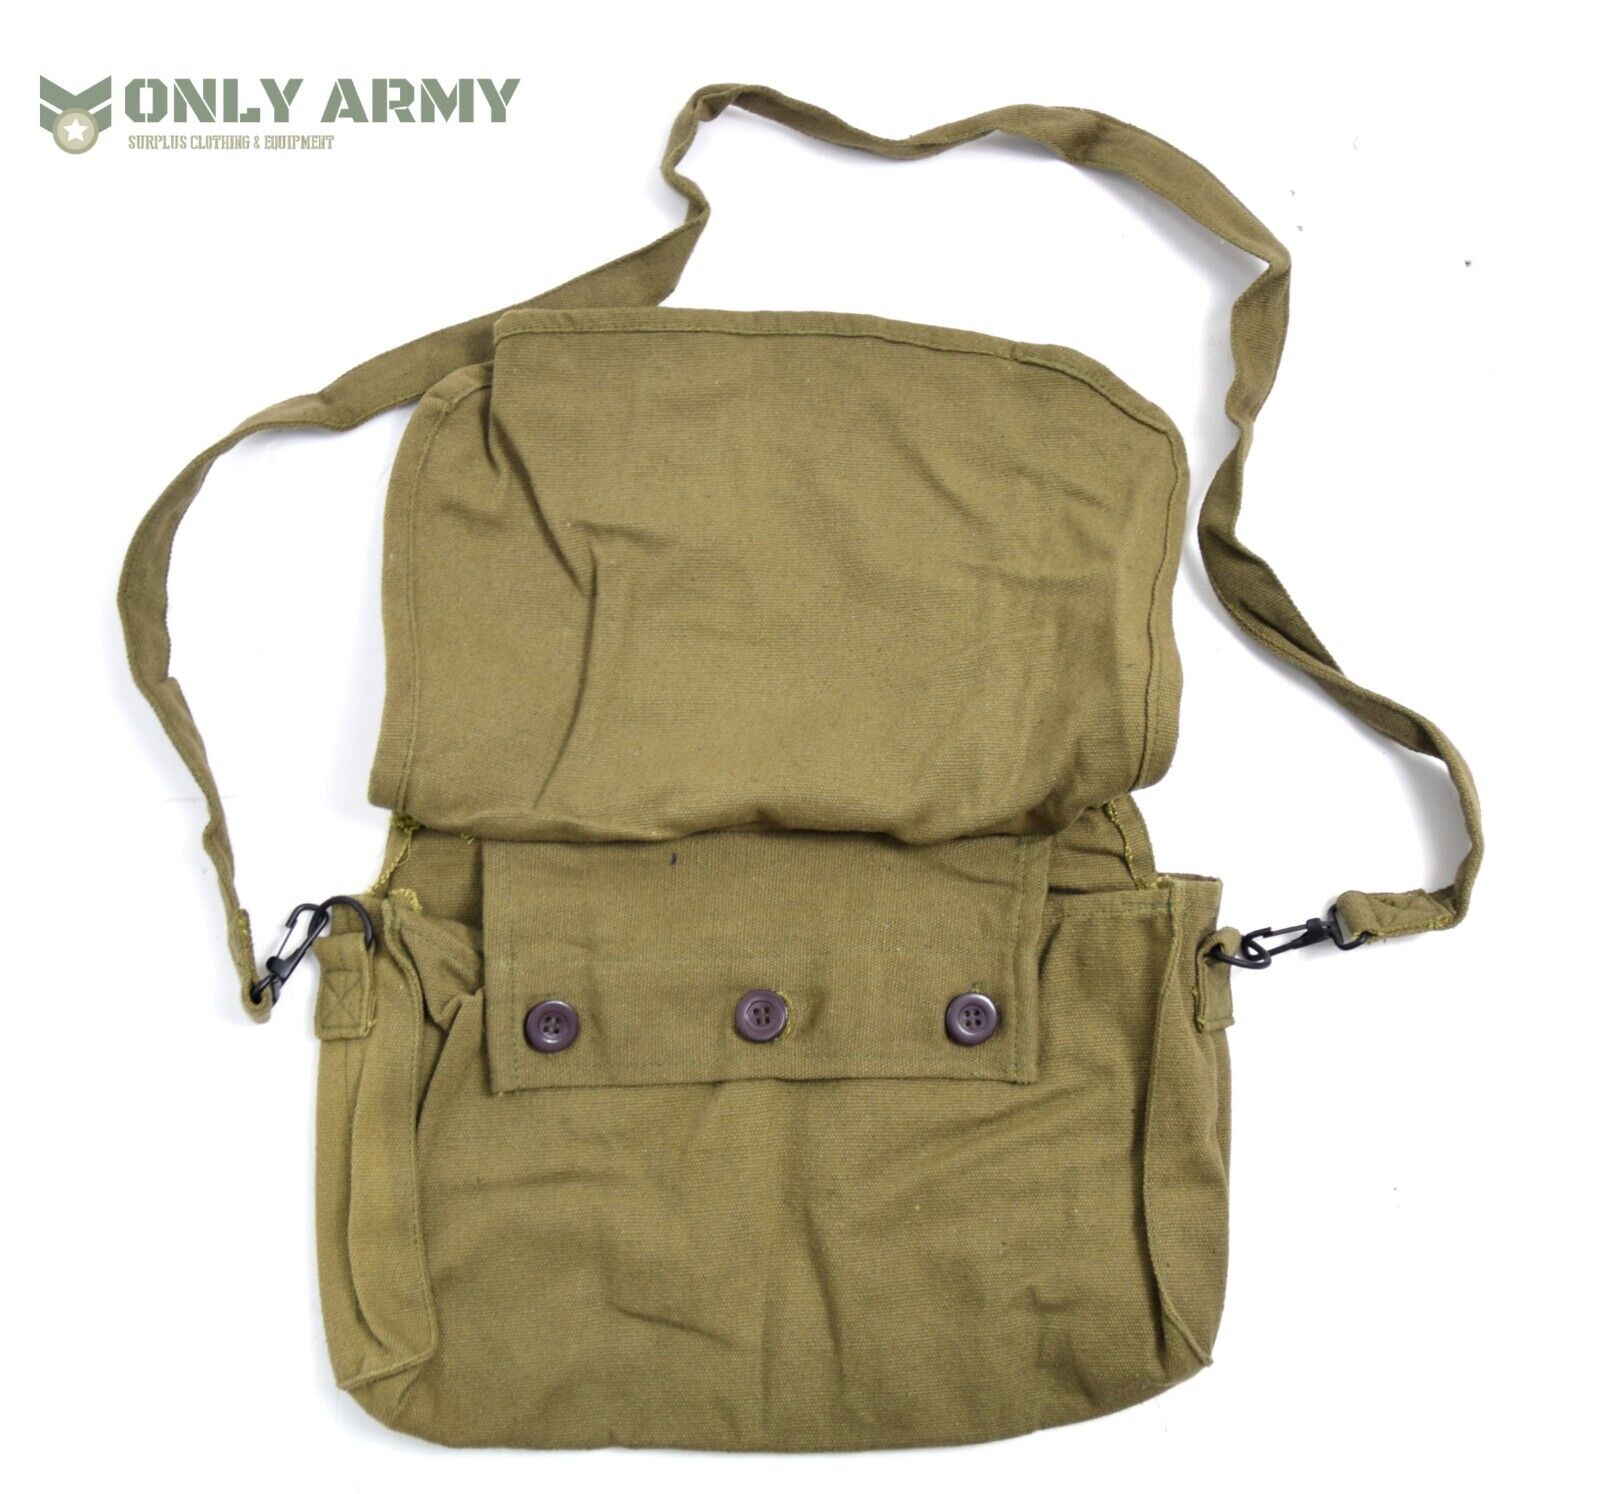 Vintage German Army Canvas Satchel / Side Bag Lightweight Shoulder Utility Bag